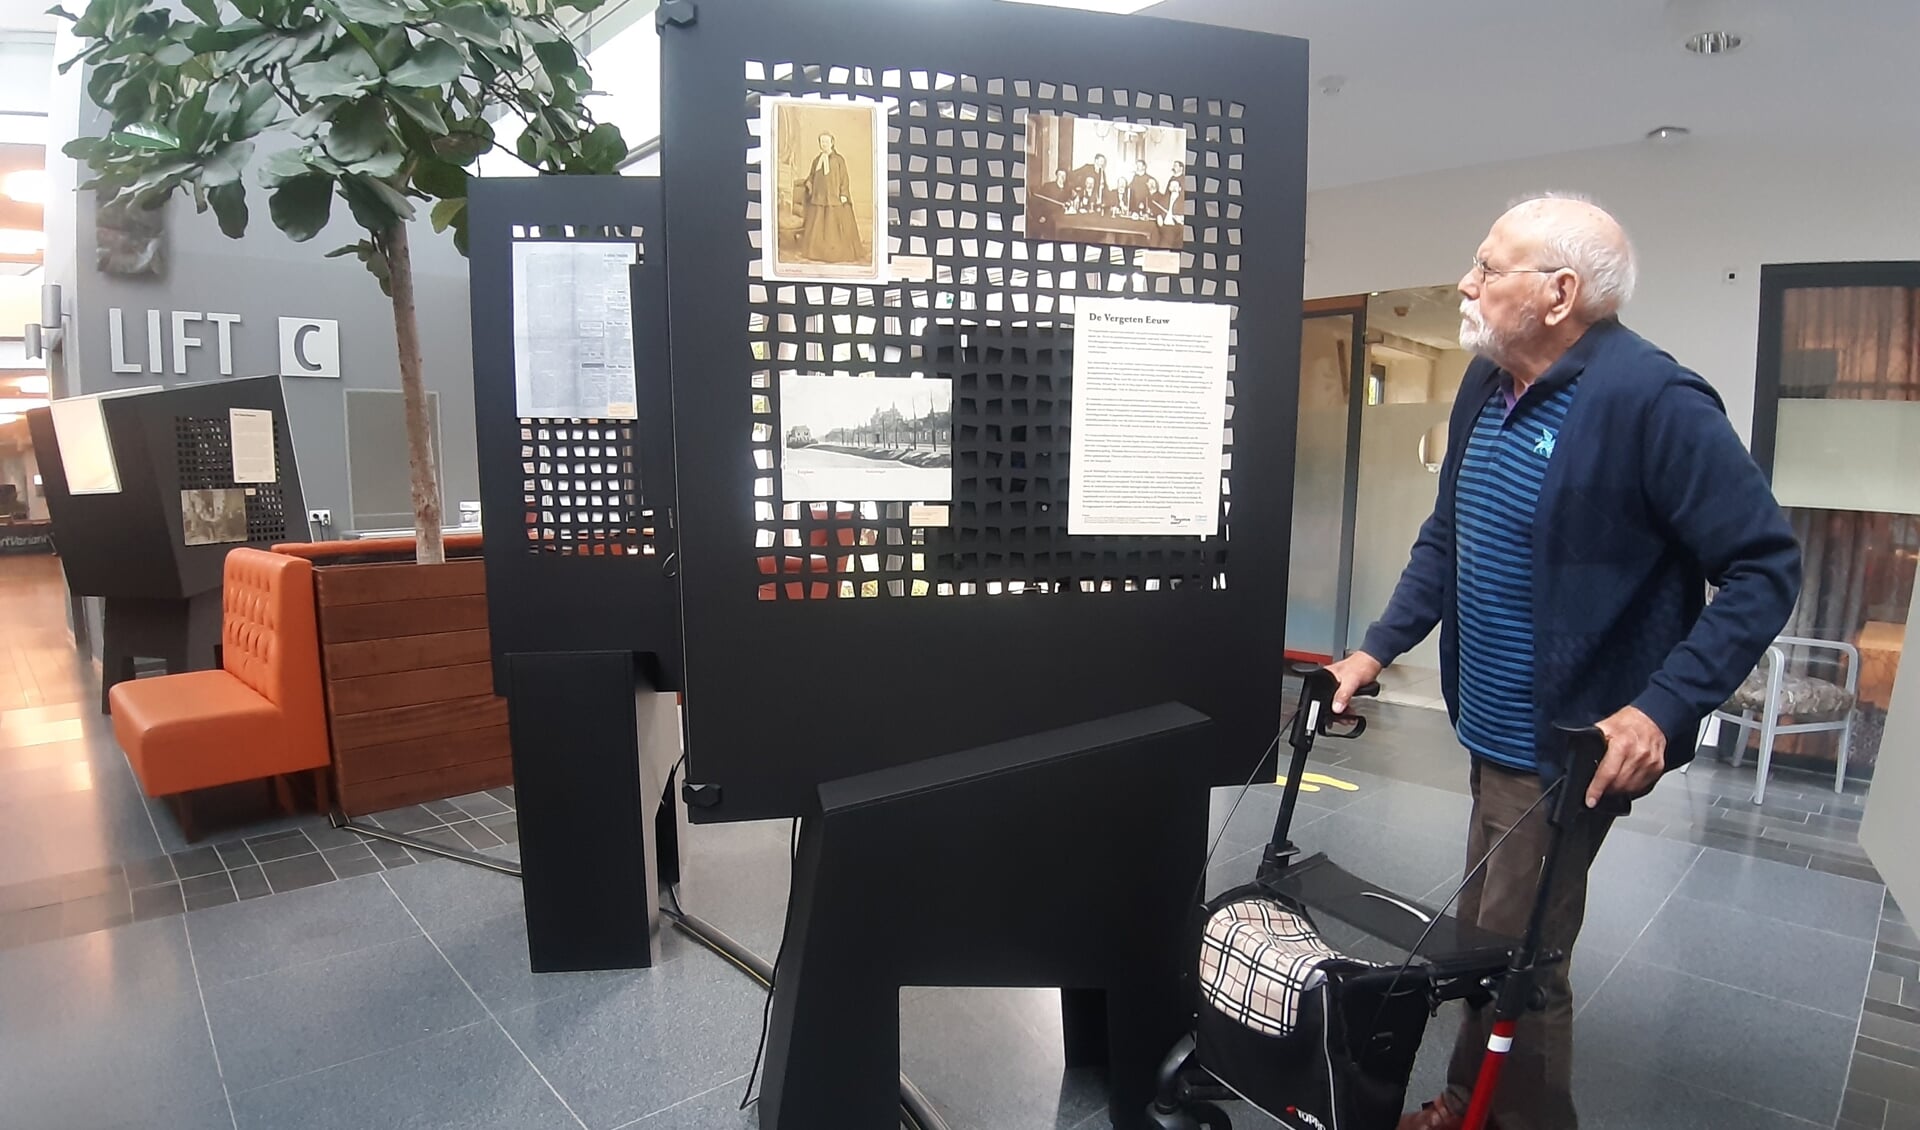 De 87-jarige Ab Pongers is onder de indruk van de expositie. Foto: Rudi Hofman